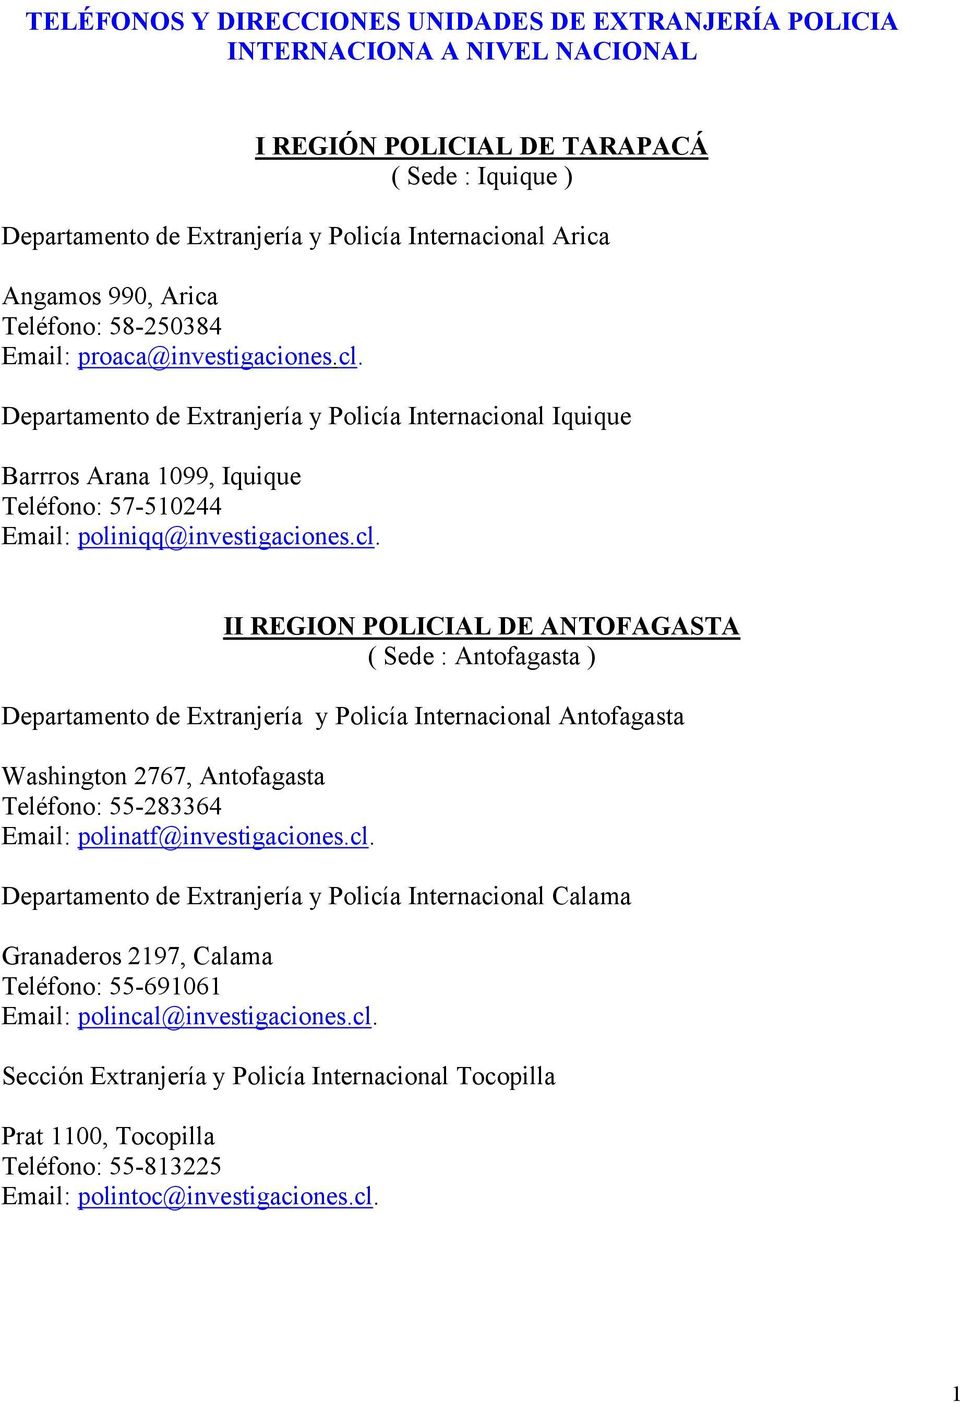 II REGION POLICIAL DE ANTOFAGASTA ( Sede : Antofagasta ) Departamento de Extranjería y Policía Internacional Antofagasta Washington 2767, Antofagasta Teléfono: 55-283364 Email: